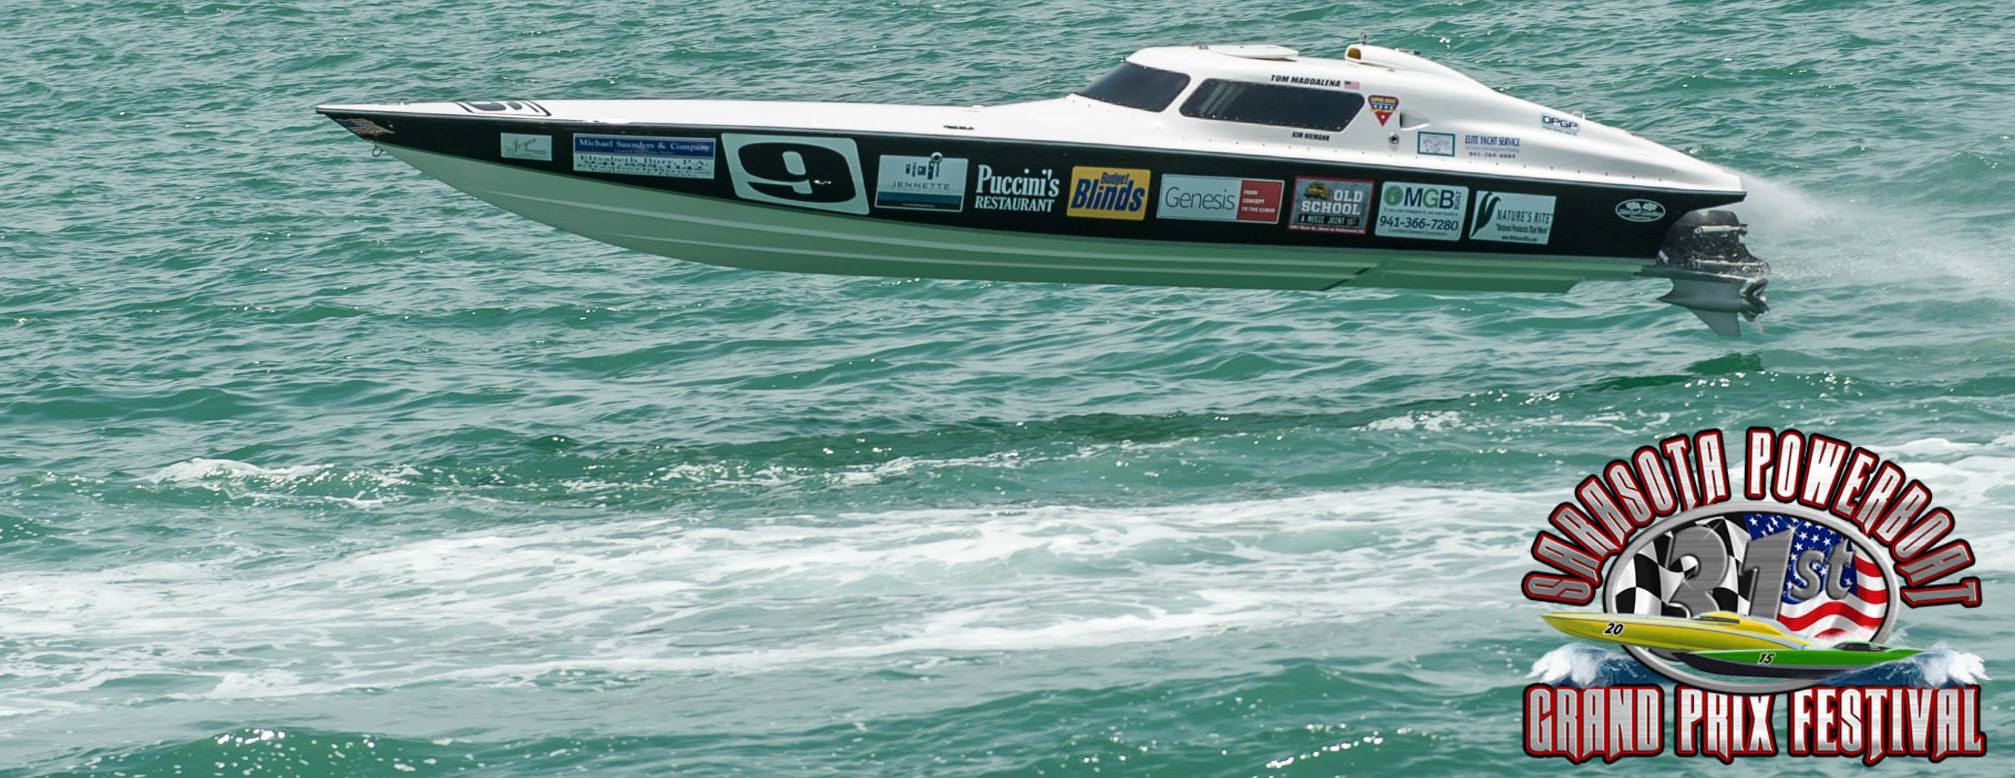 Sarasota Powerboat Grand Prix